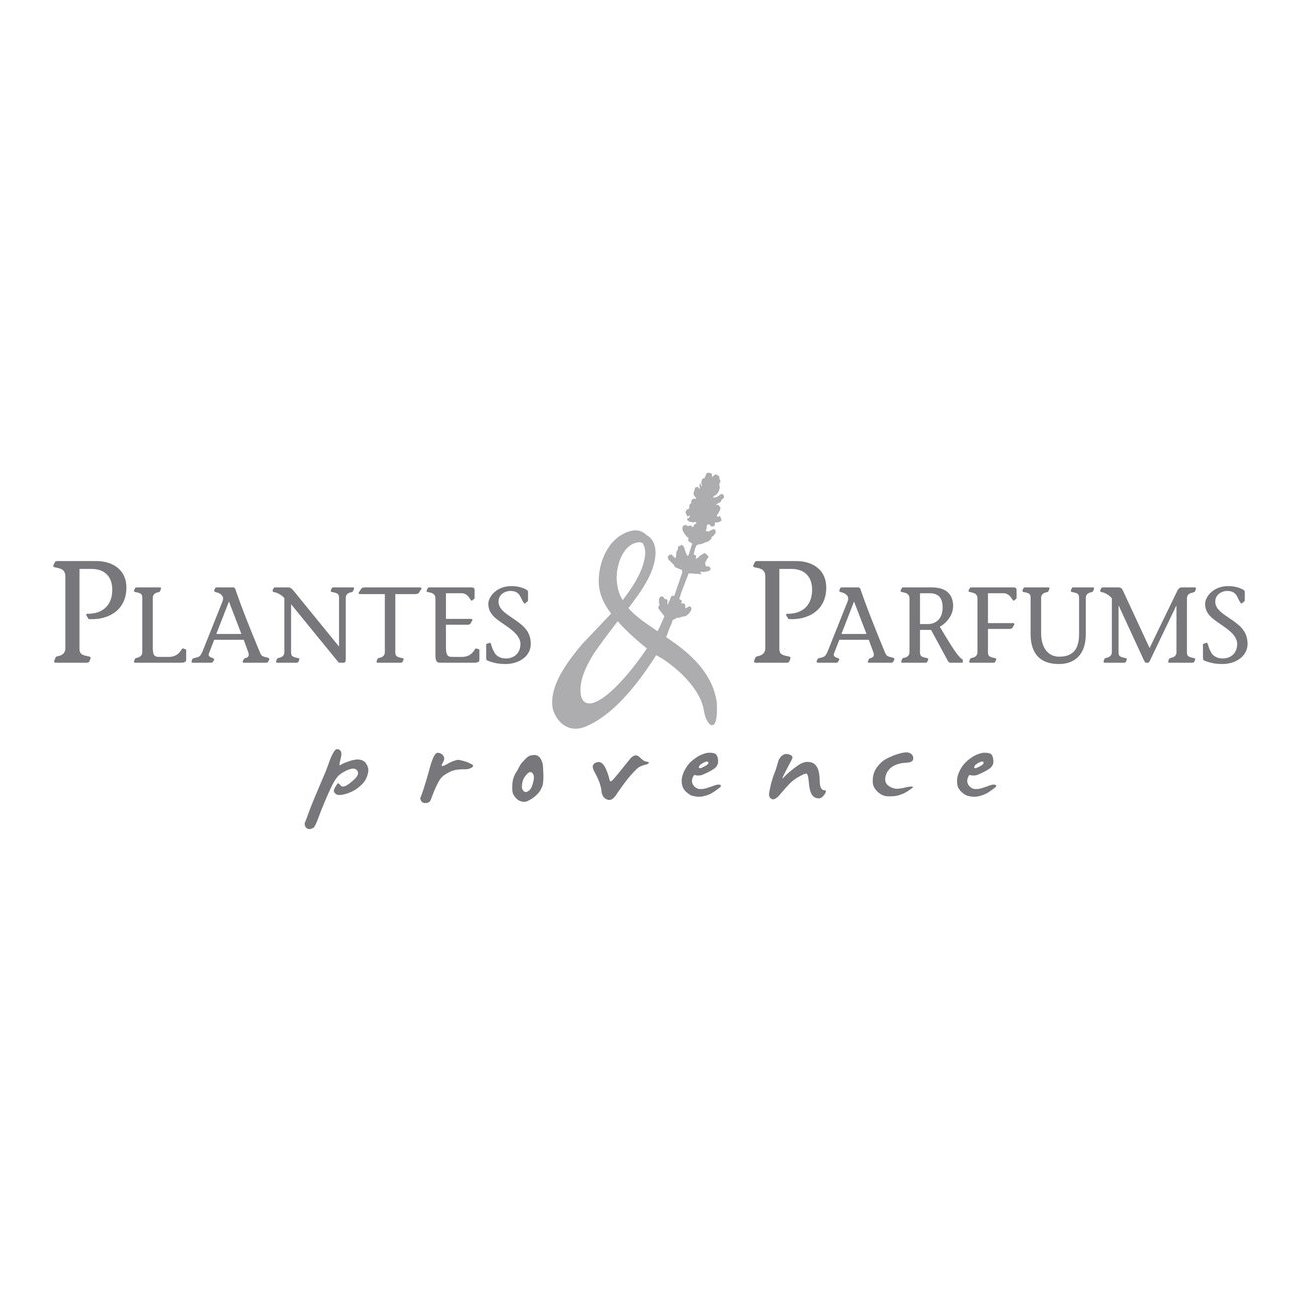 Plantes et Parfums